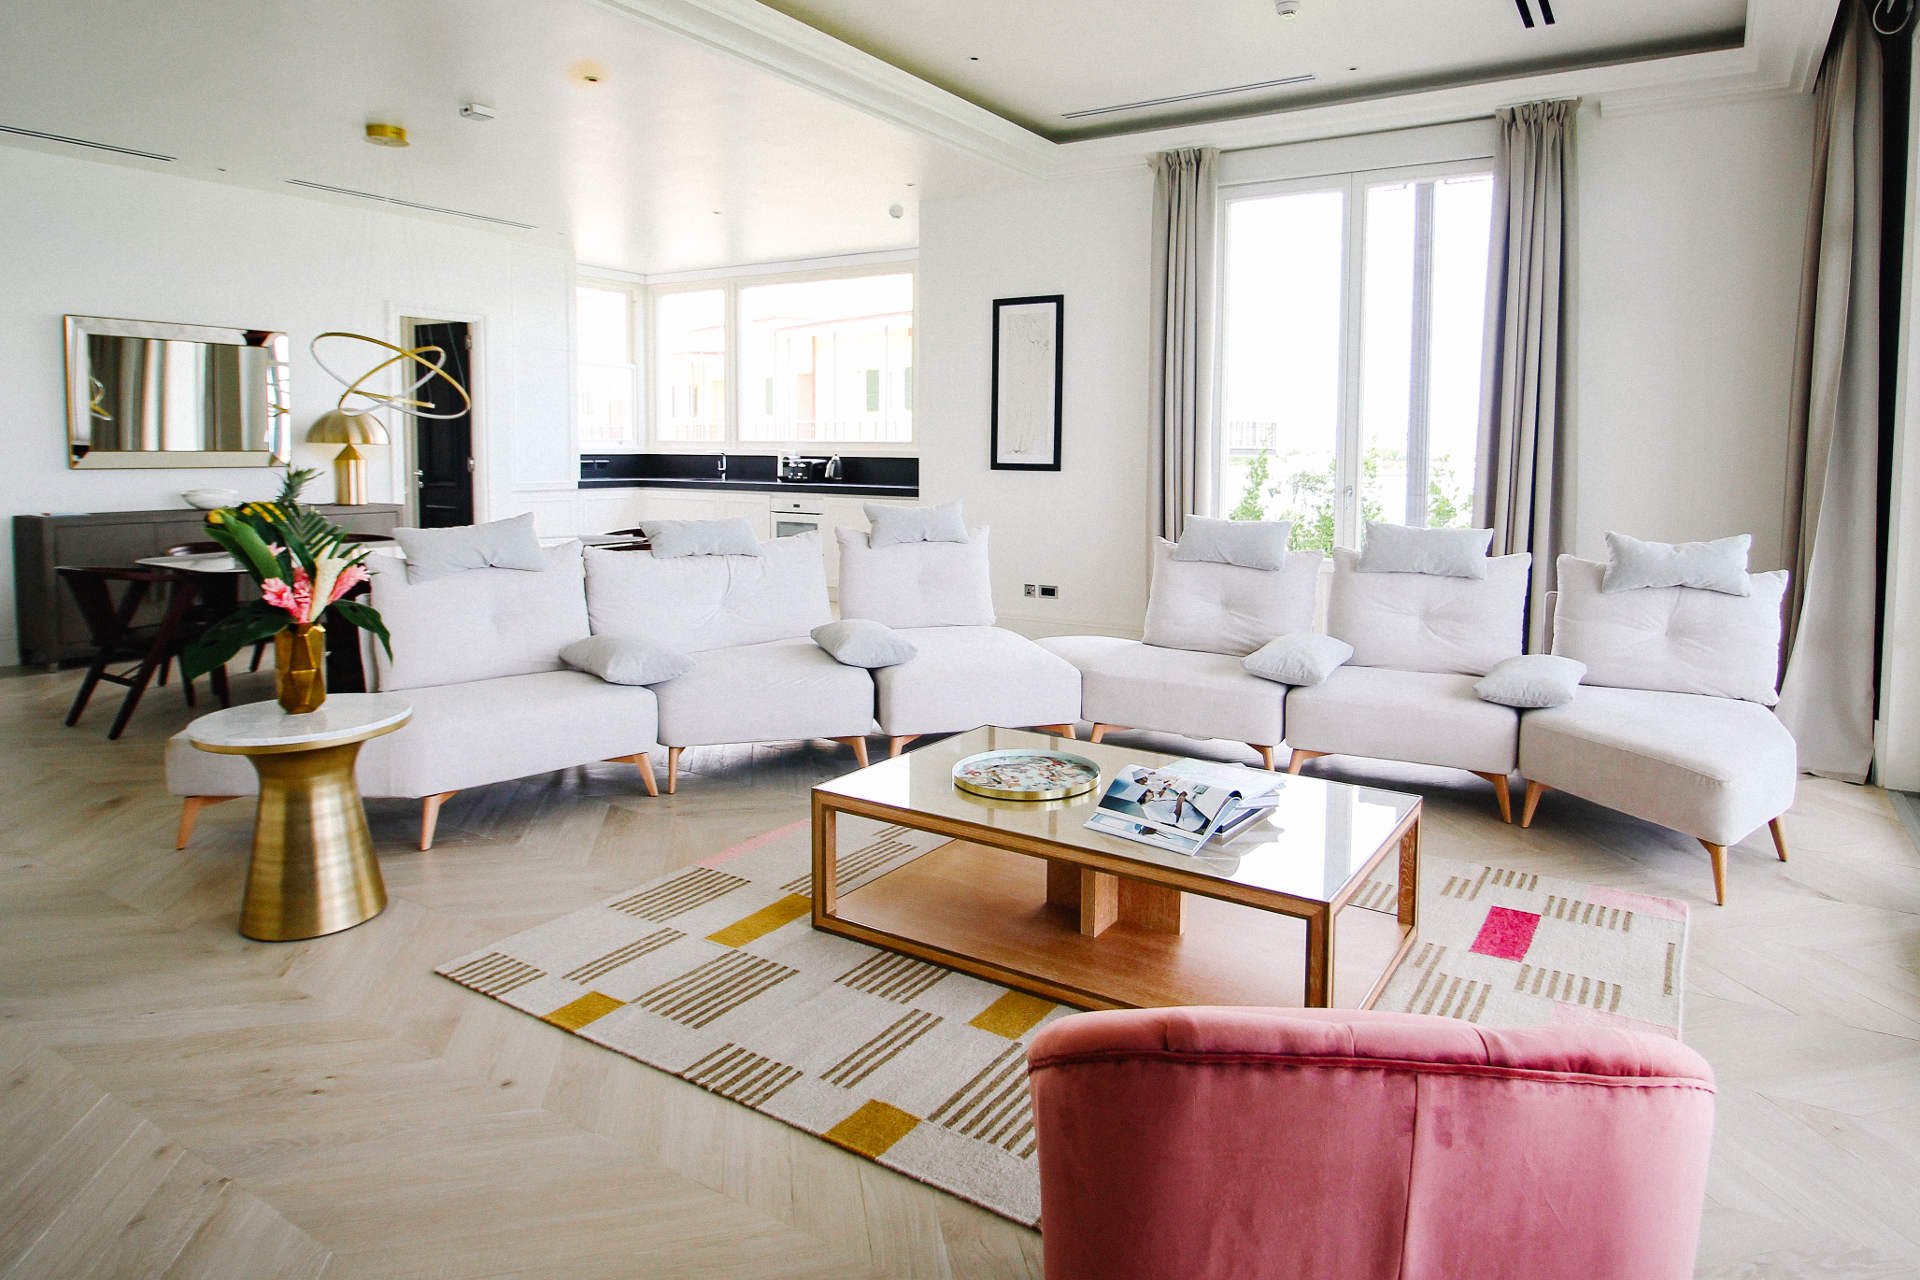 luxury villa interior